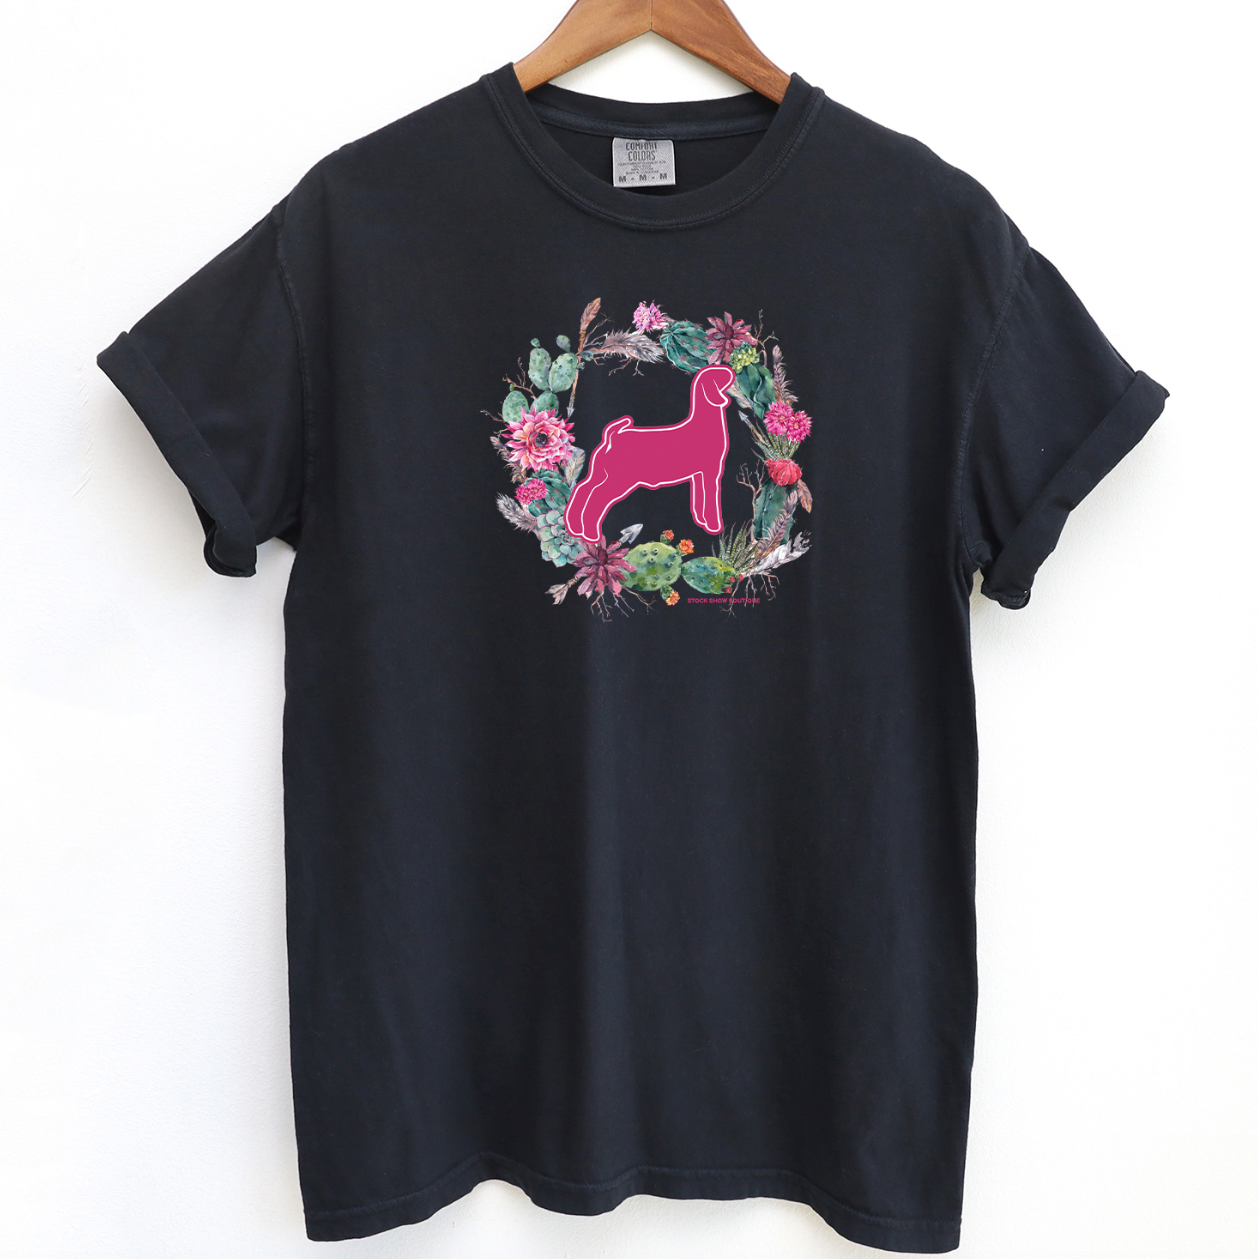 Goat Cactus Wreath ComfortWash/ComfortColor T-Shirt (S-4XL) - Multiple Colors!